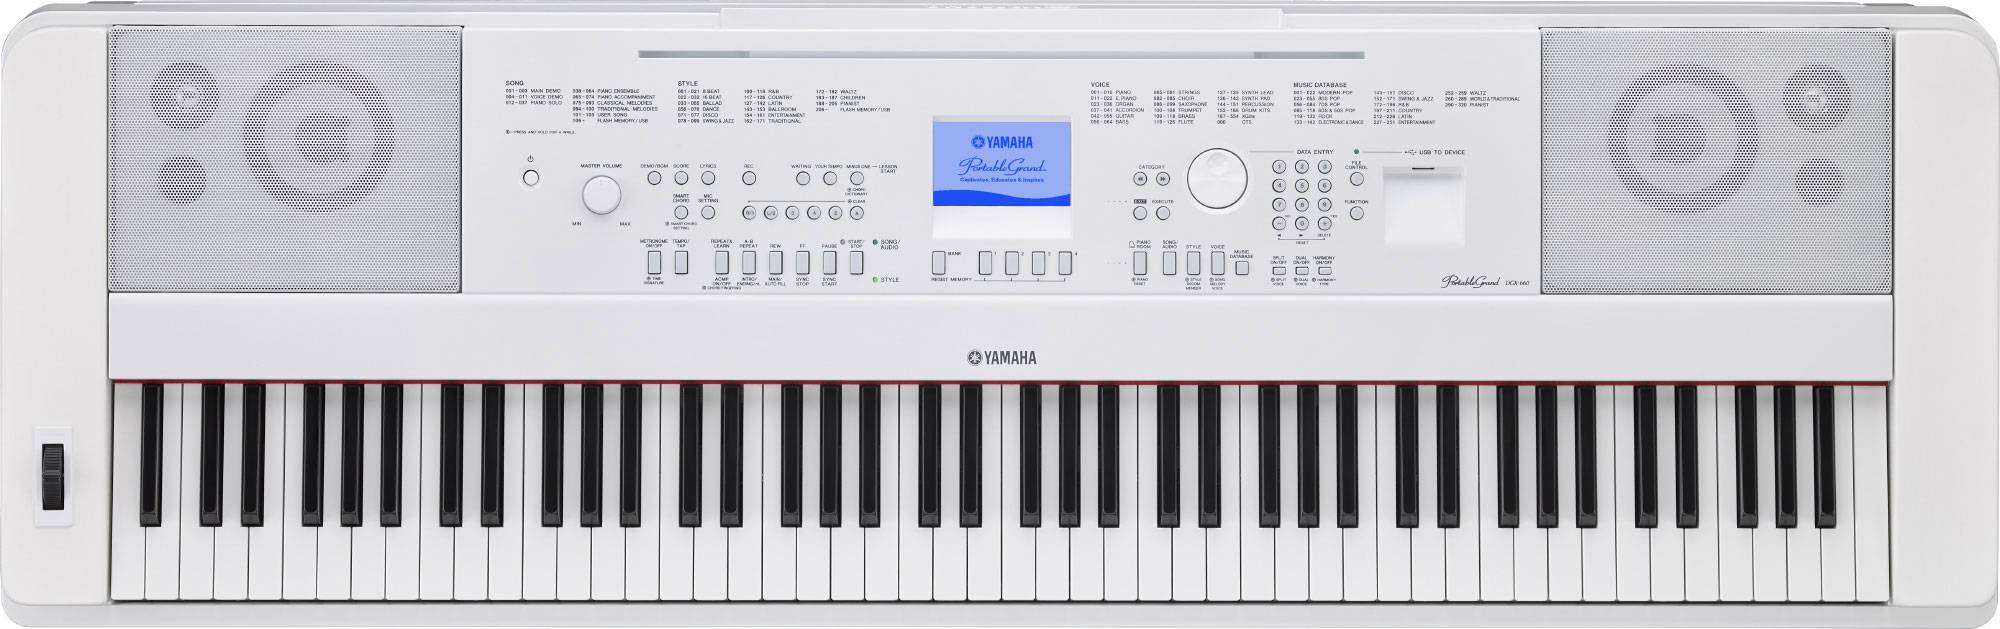 Yamaha DGX-660WH синтезатор с автоаккомпанементом, 88 клавиш, 192 полифония, 205 стилей, 554 тембра